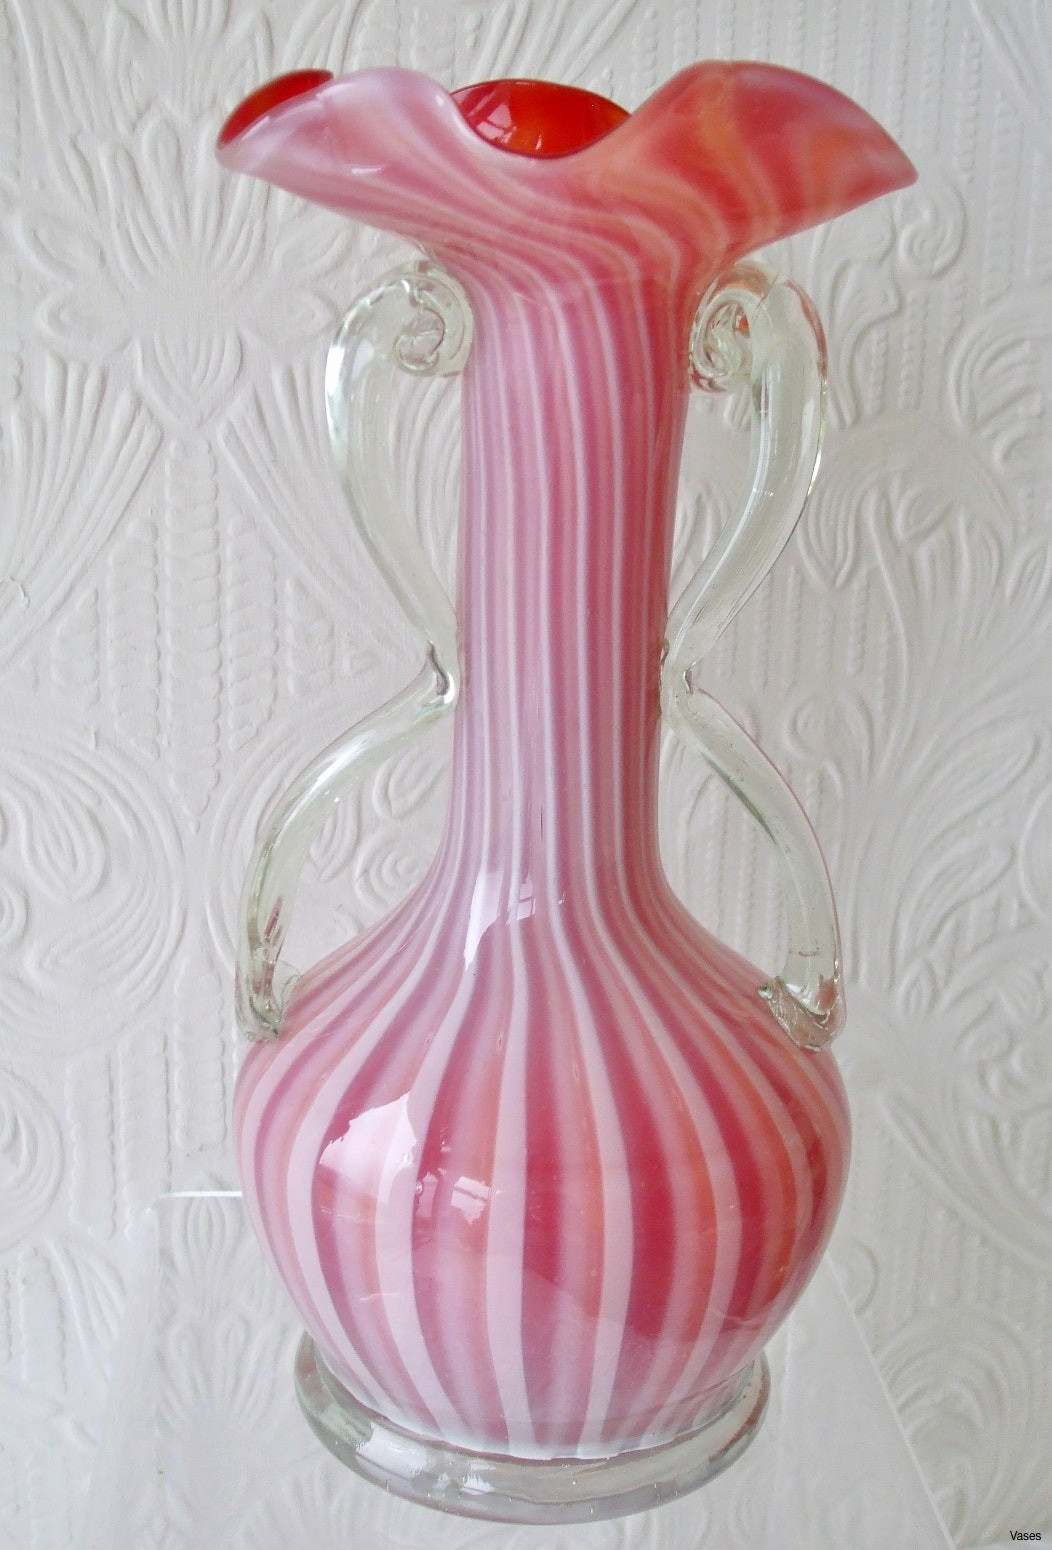 buy red glass vase of 18 luxury italian blown glass vase bogekompresorturkiye com intended for murano glas vasen luxus murano glass vaseh vases vintage sommerso art vase 1960si 0d